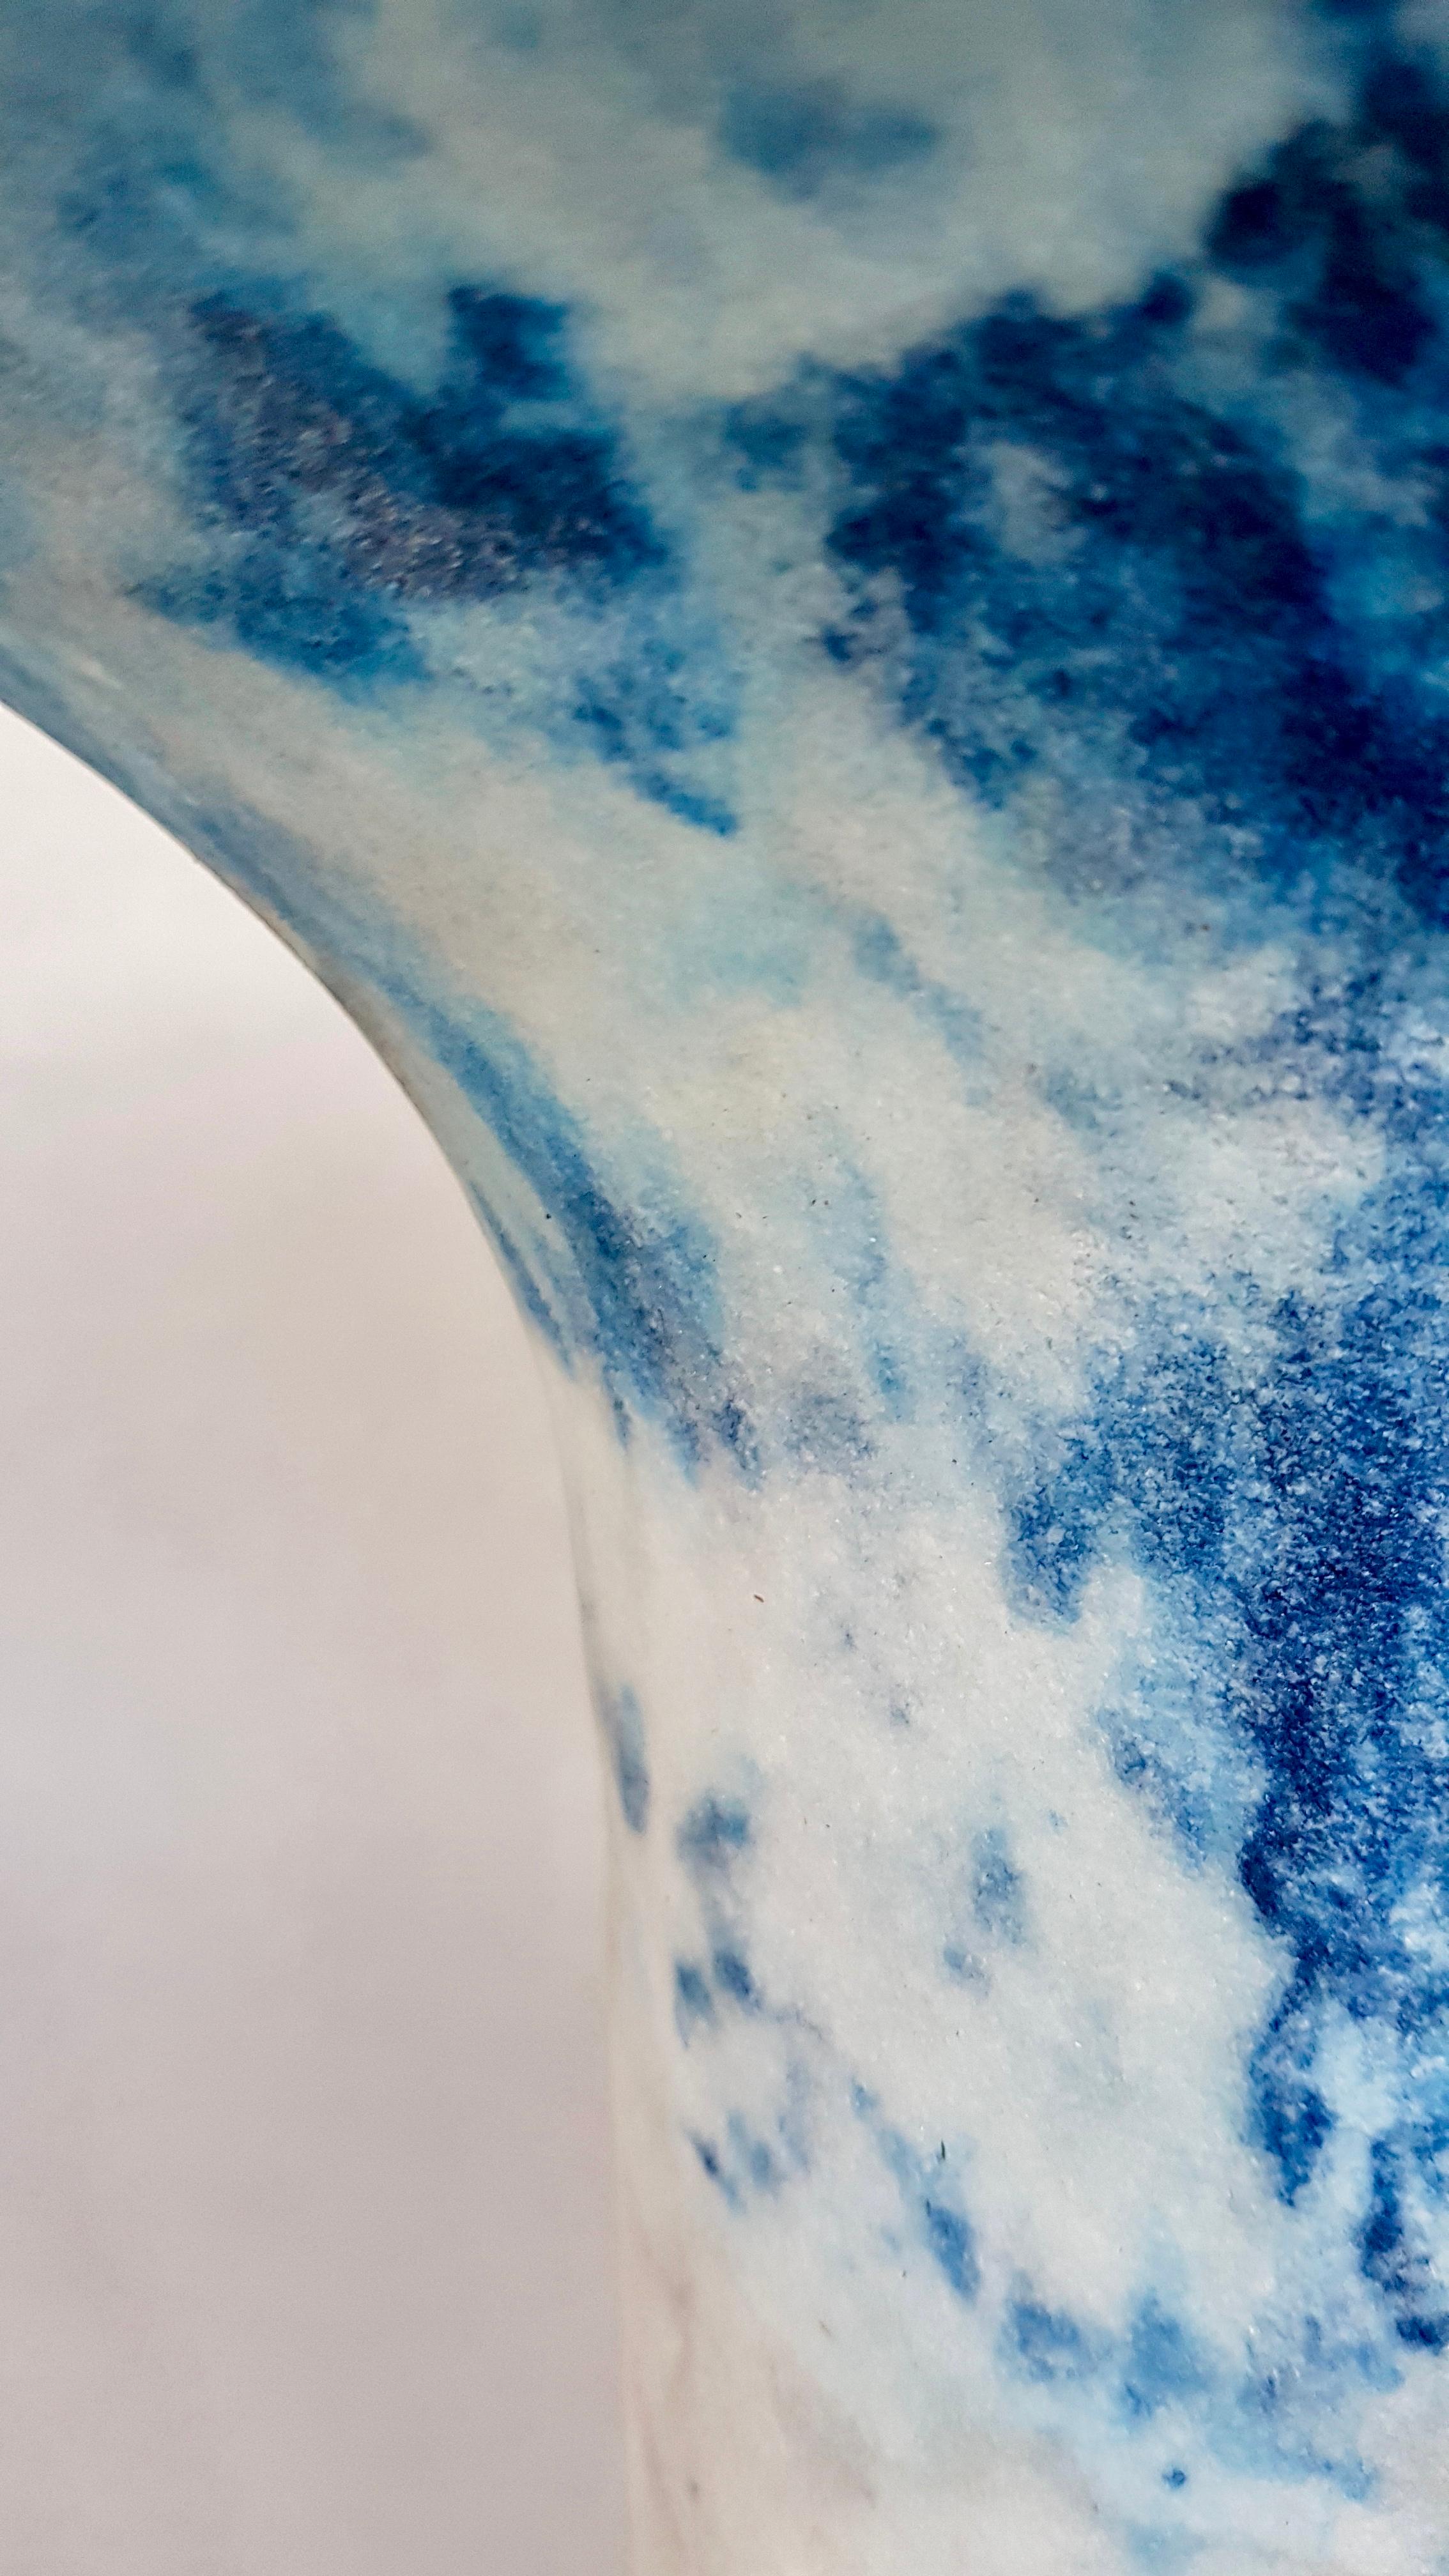 Einzigartige blau marmorierte Salze Gueridon, Roxane Lahidji
MATERIAL: Marmorierte Salze, eine einzigartige, preisgekrönte Technik, entwickelt von Roxane Lahidji
Abmessungen: 42 x 38 x 38 cm
Einzigartiges Gueridon.

Preisträger der Bolia Design